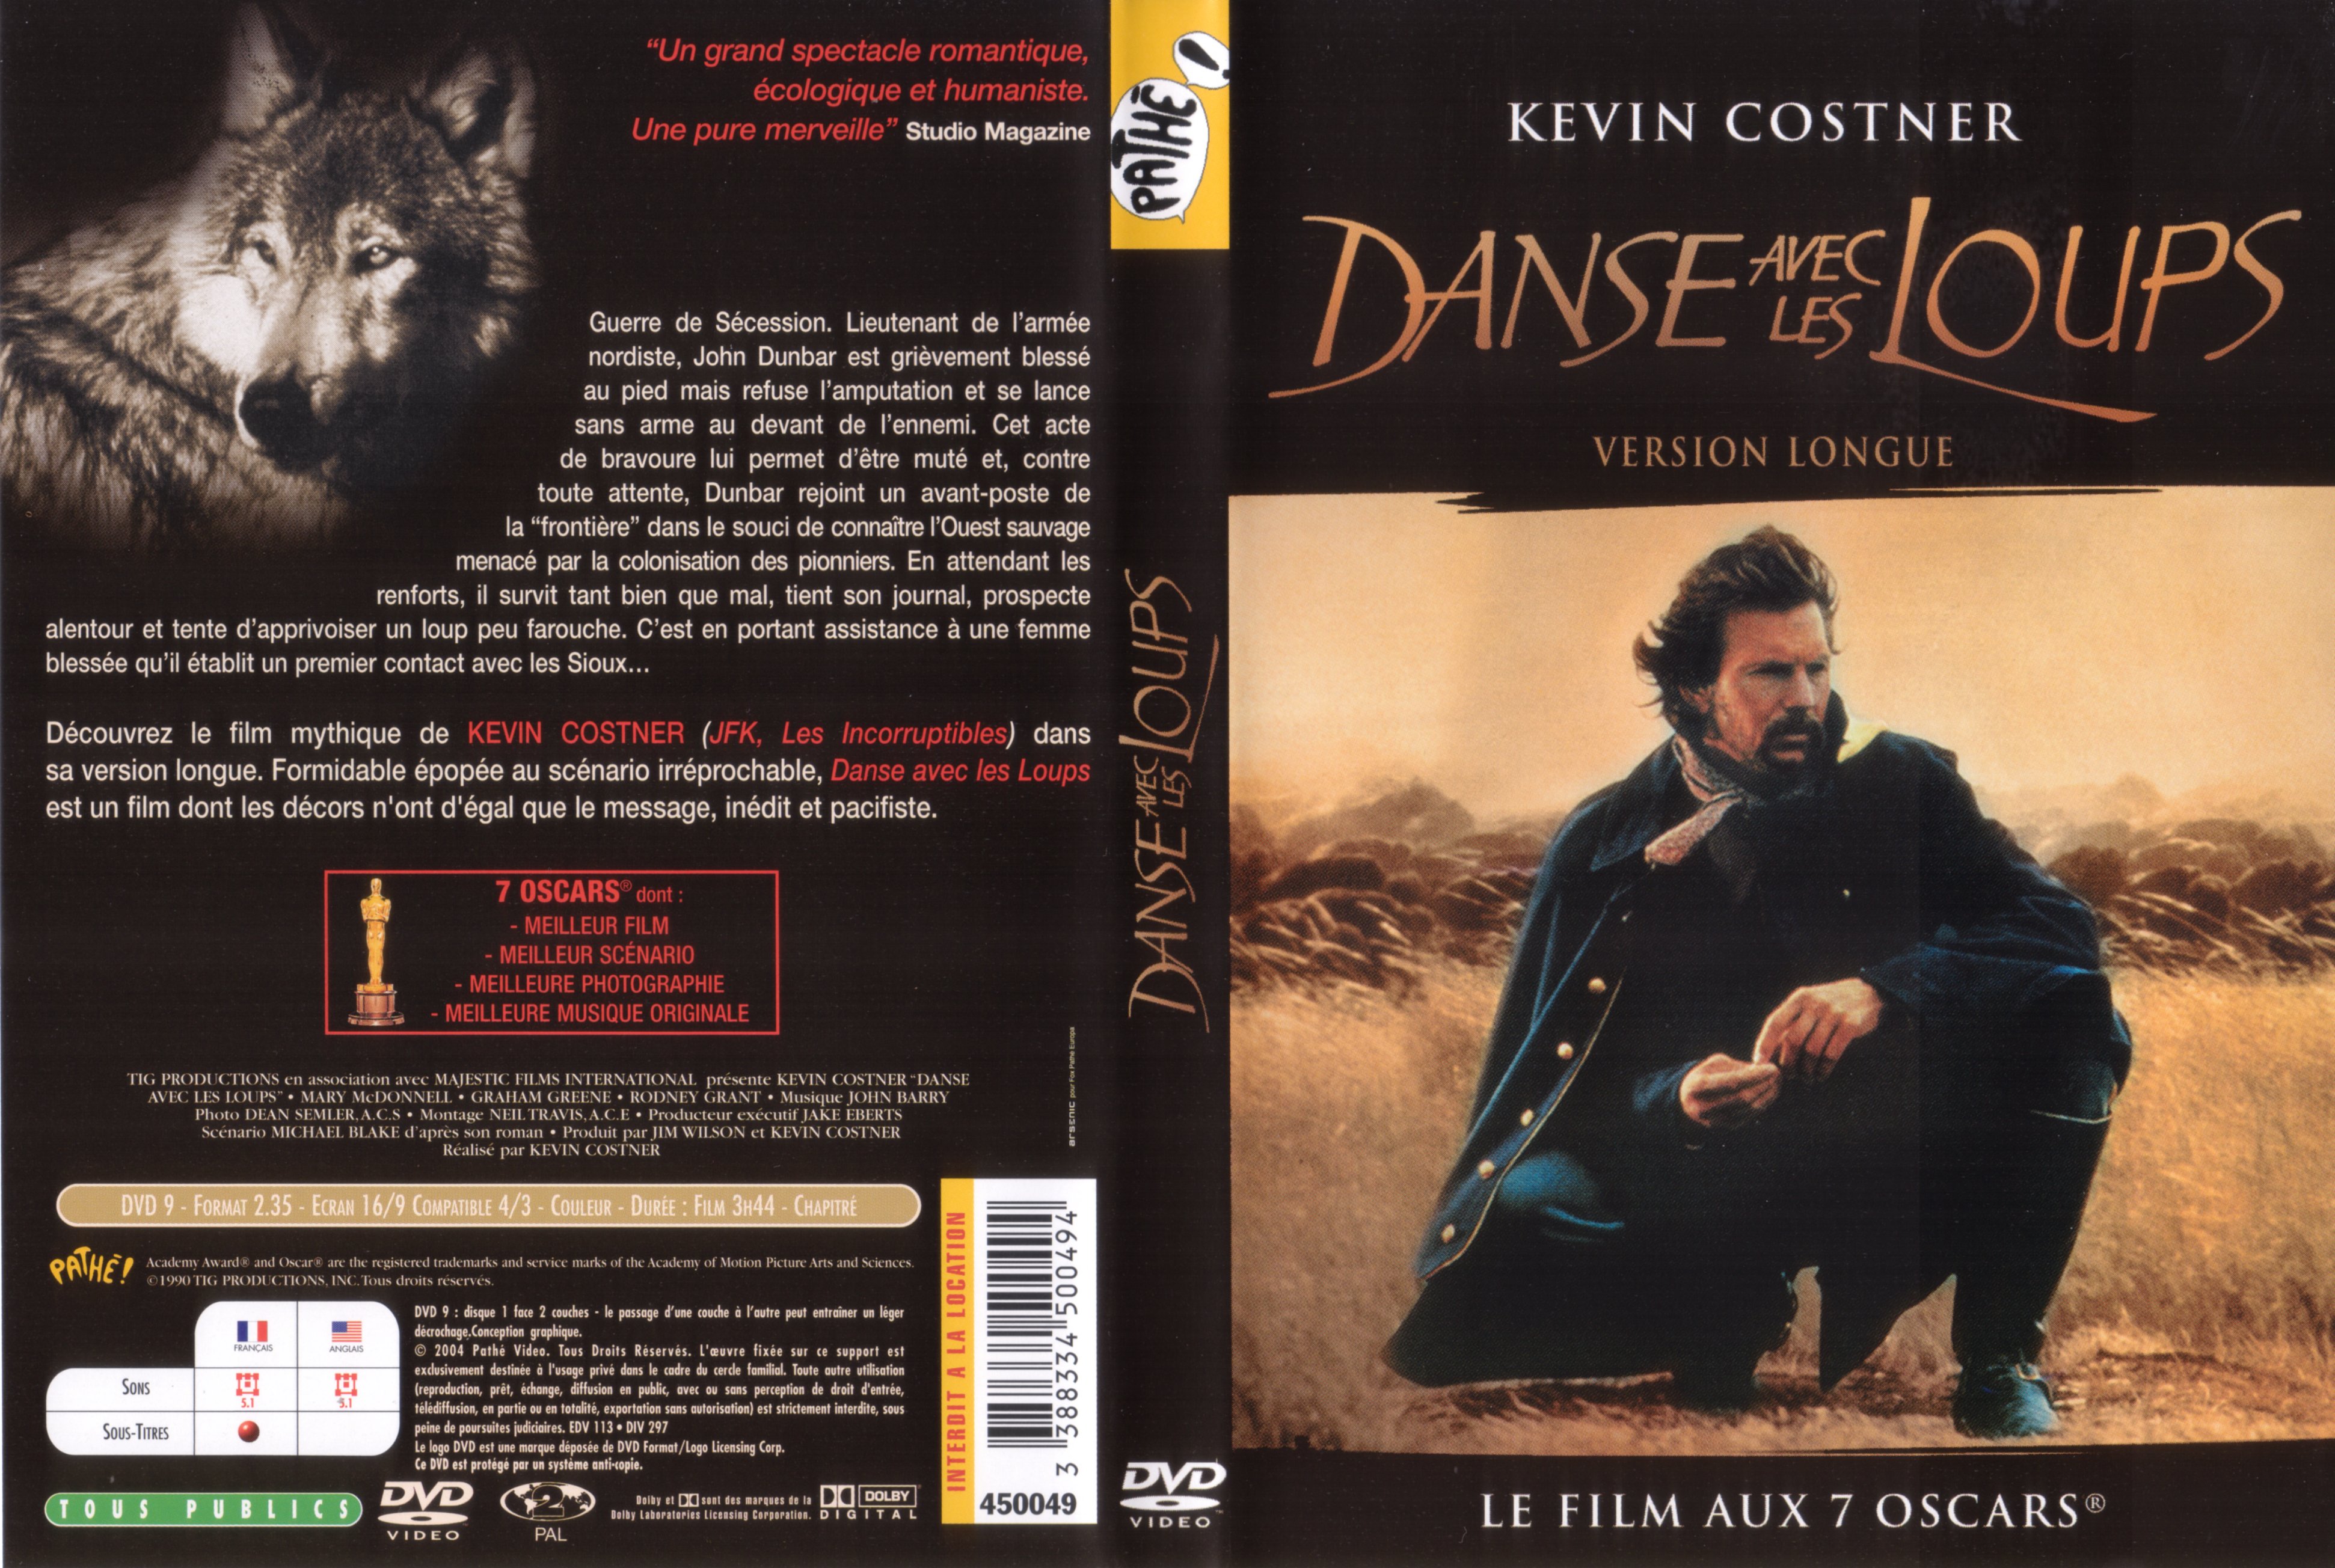 Jaquette DVD Danse avec les loups v2